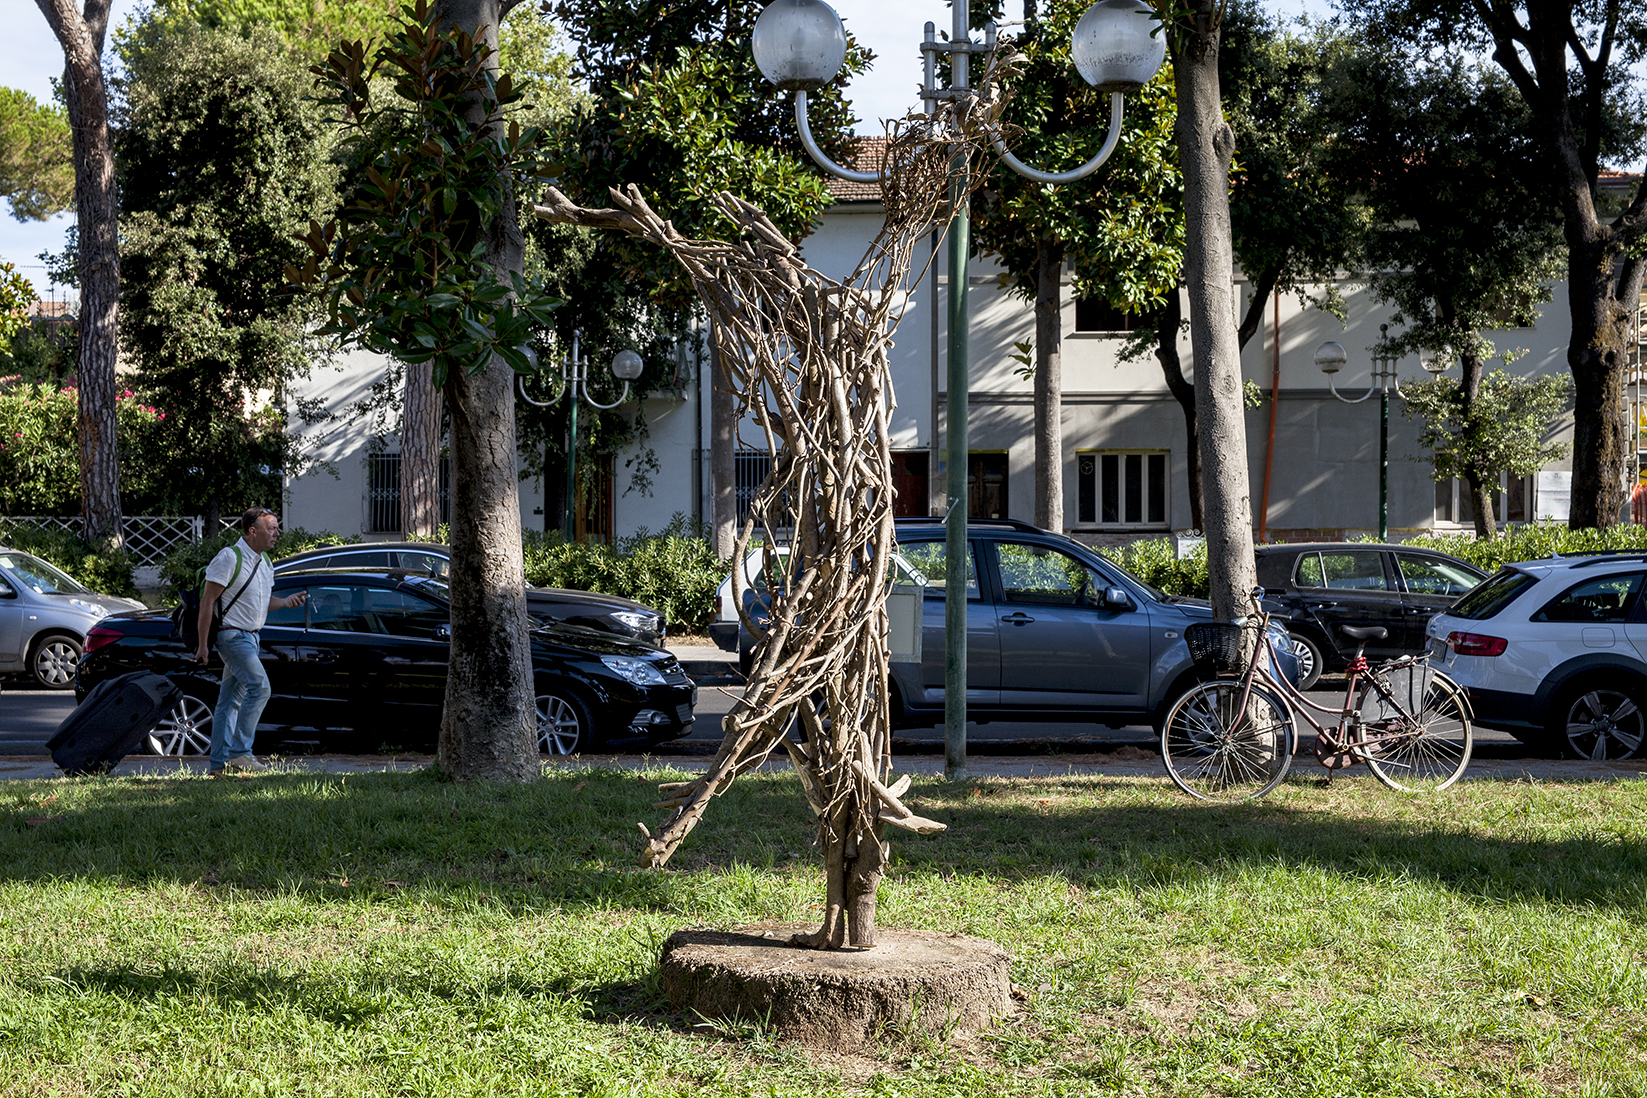 “Un lupo non ulula alle radici”, in piazza Santa Caterina la scultura di Sedicente Morandi